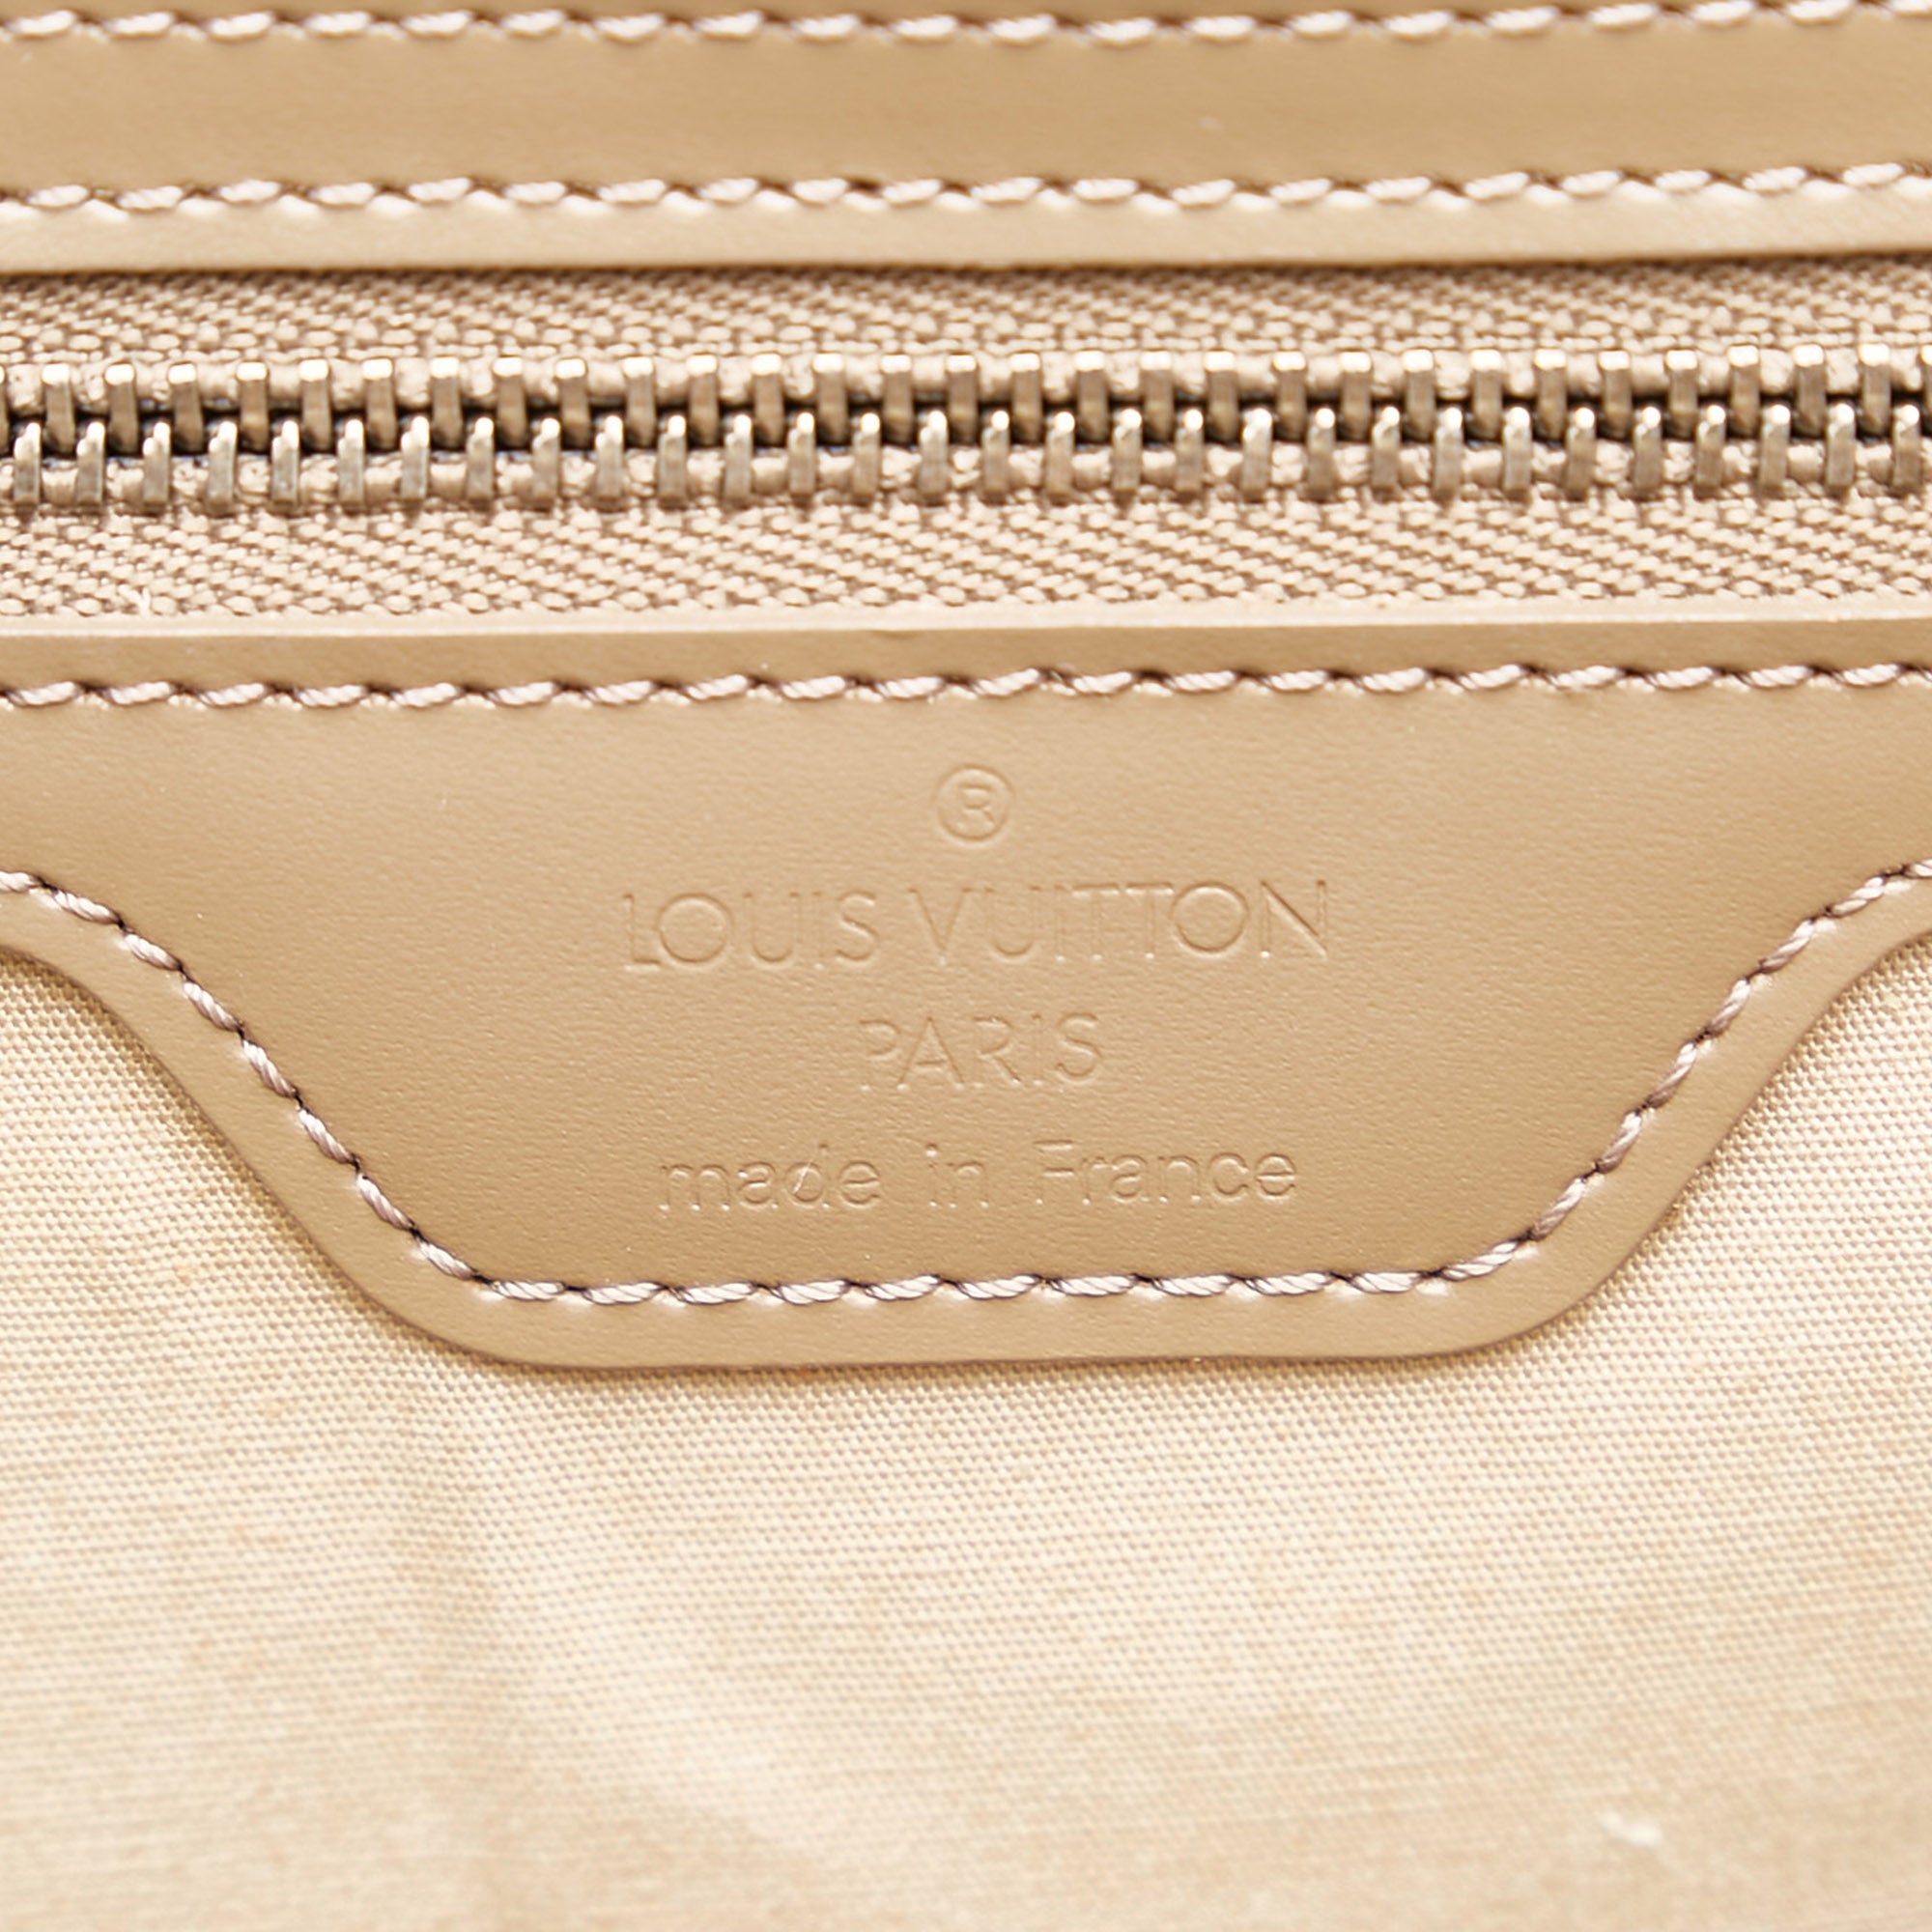 Louis Vuitton Vintage - Epi Saint Tropez - Brown Beige - Leather